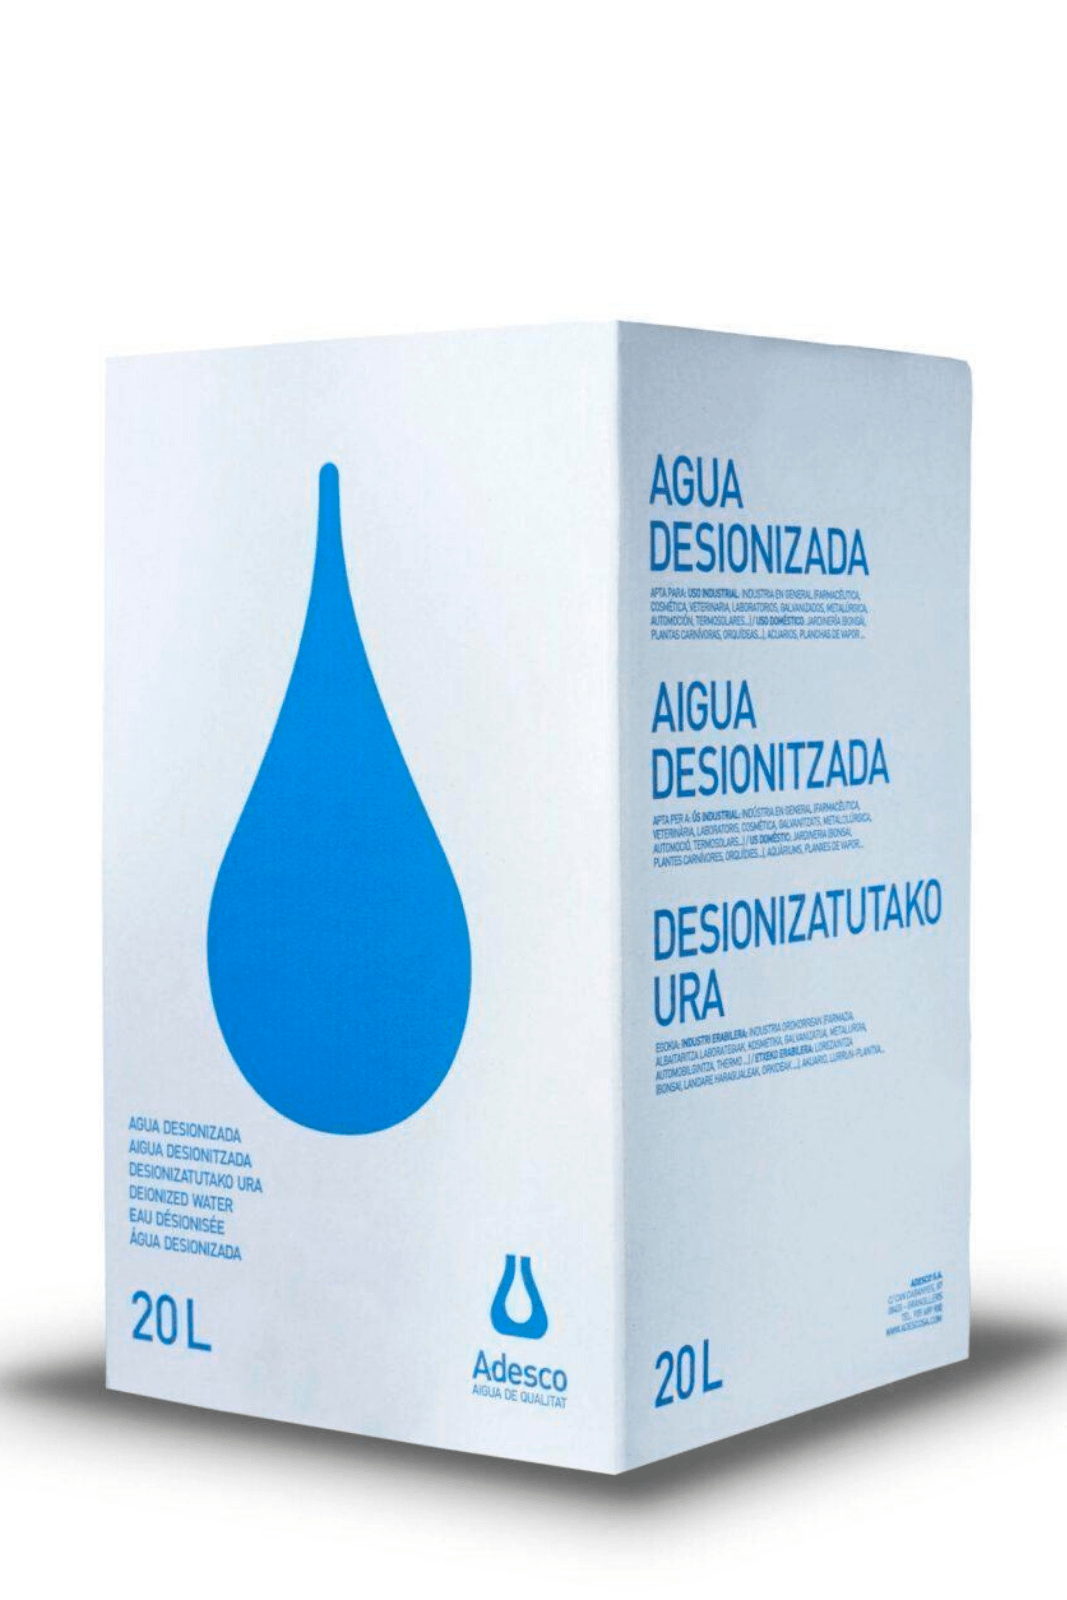 Instrumento Adulto milagro Agua Desionizada (Destilada) en Bag in box de 20 Litros - Adesco